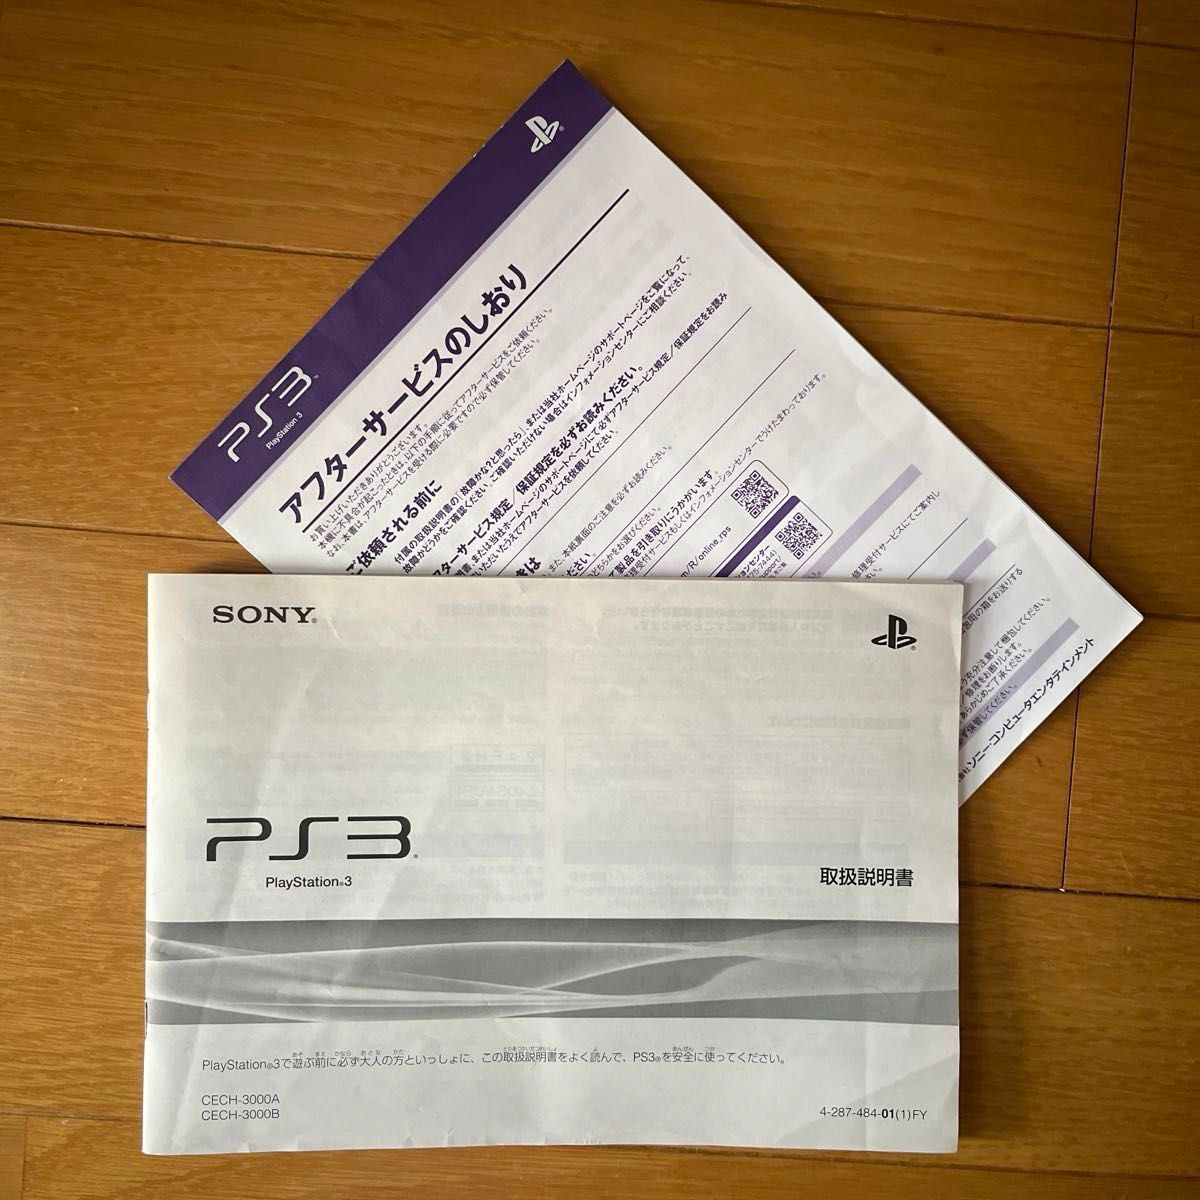 PlayStation3 FFⅩⅢ-2 LIGHTNING EDITION Ver.2 CECH-3000B